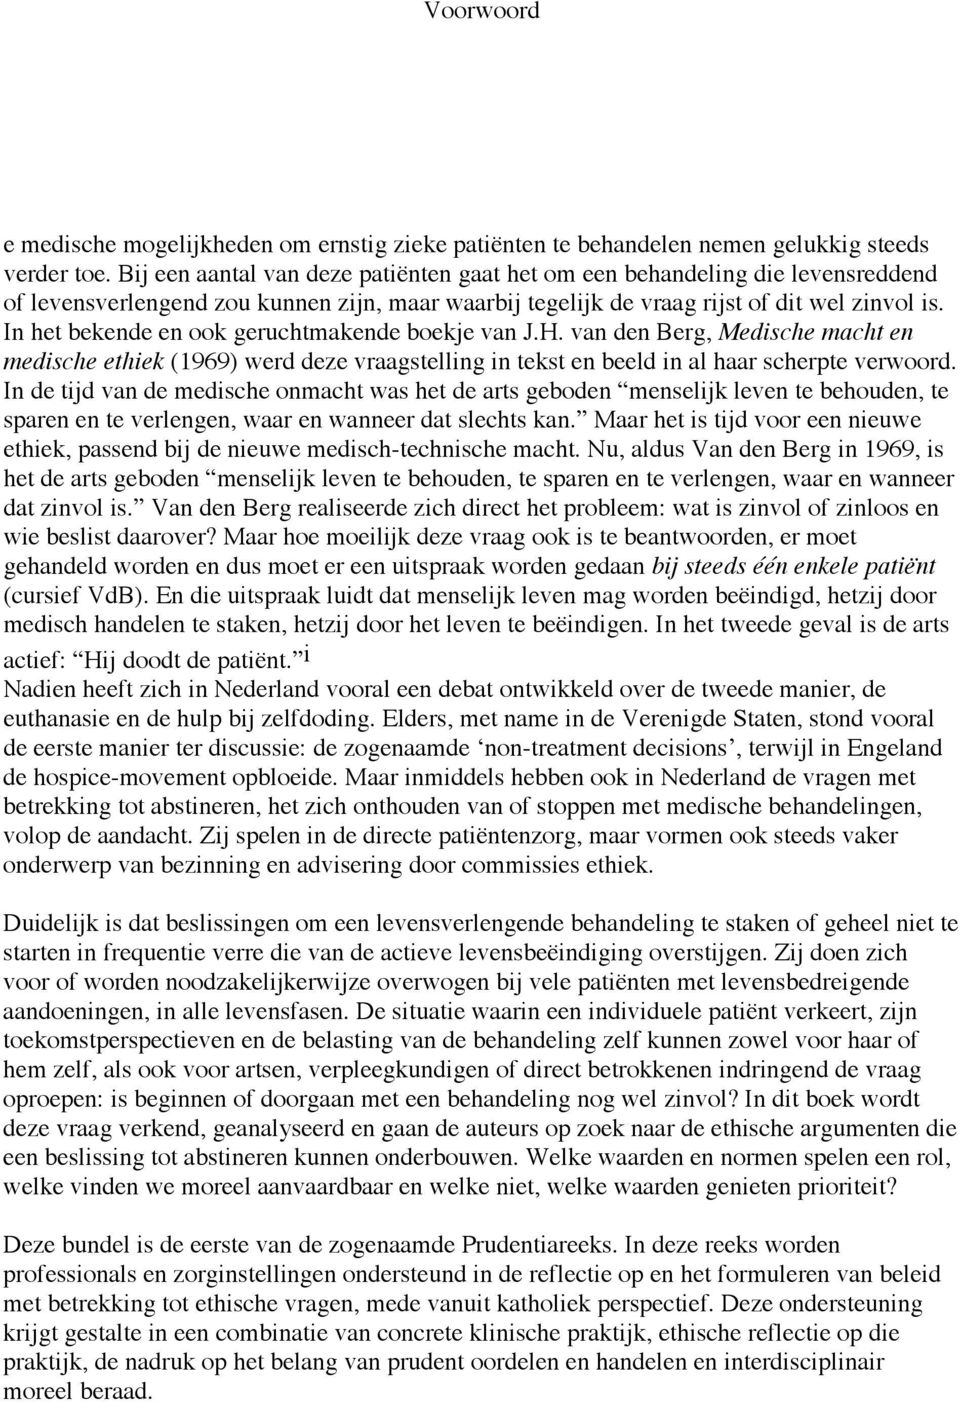 In het bekende en ook geruchtmakende boekje van J.H. van den Berg, Medische macht en medische ethiek (1969) werd deze vraagstelling in tekst en beeld in al haar scherpte verwoord.